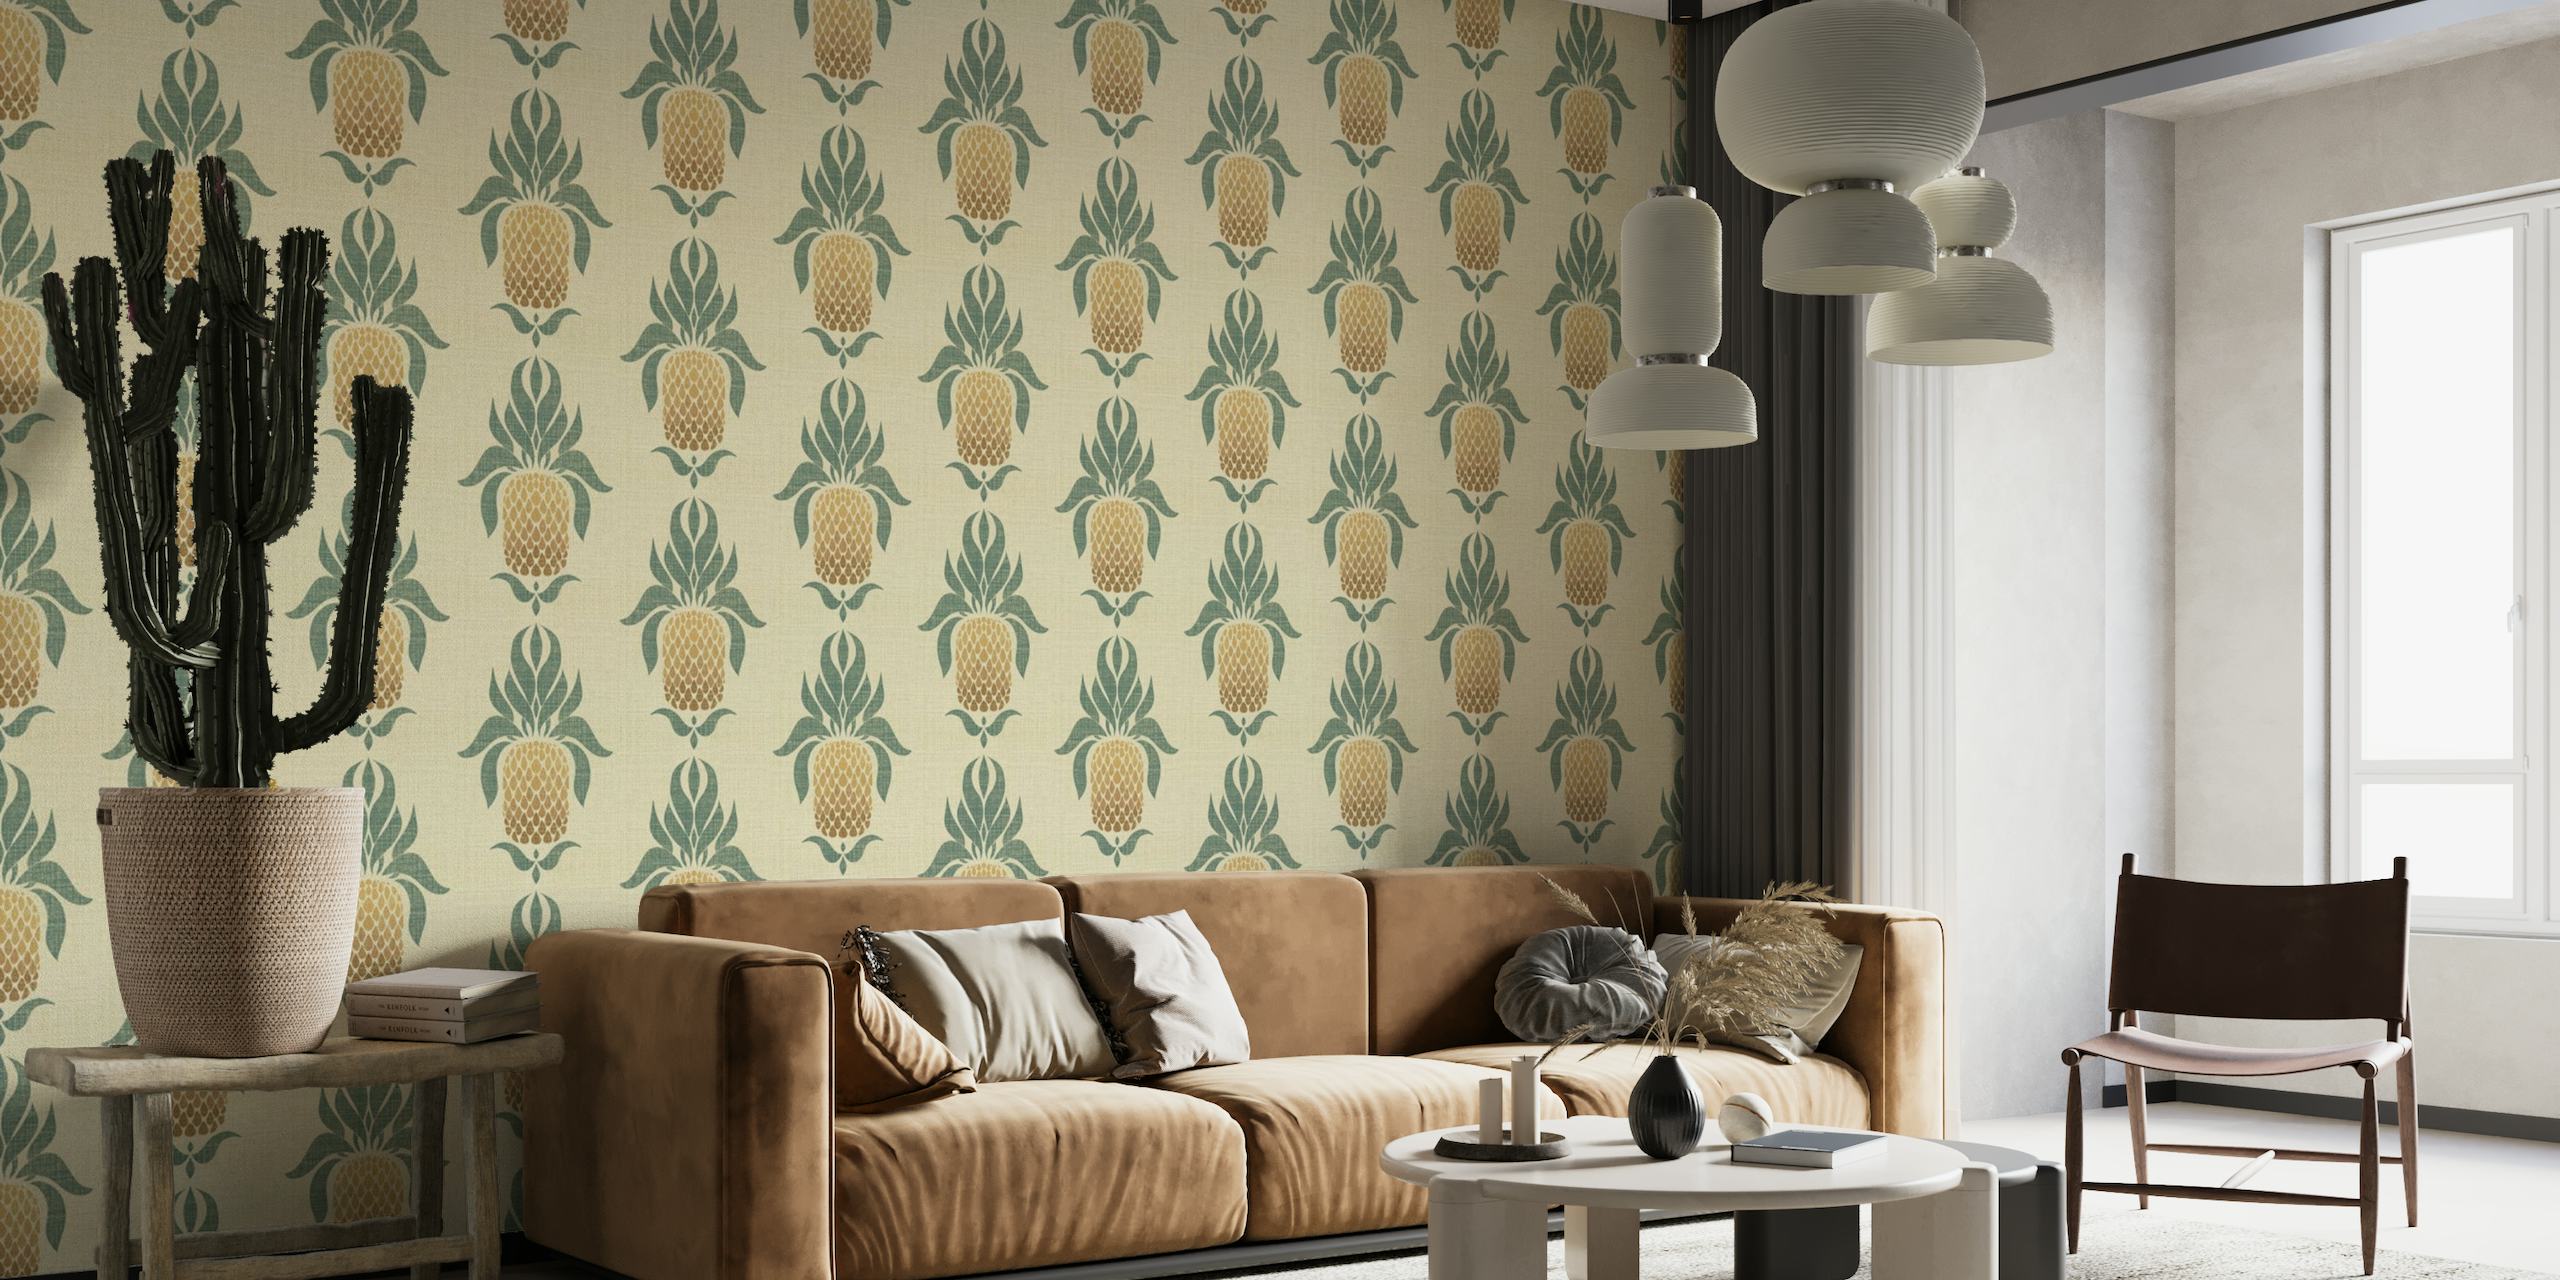 Padrão tropical de abacaxi ombre em um cenário natural para murais de parede